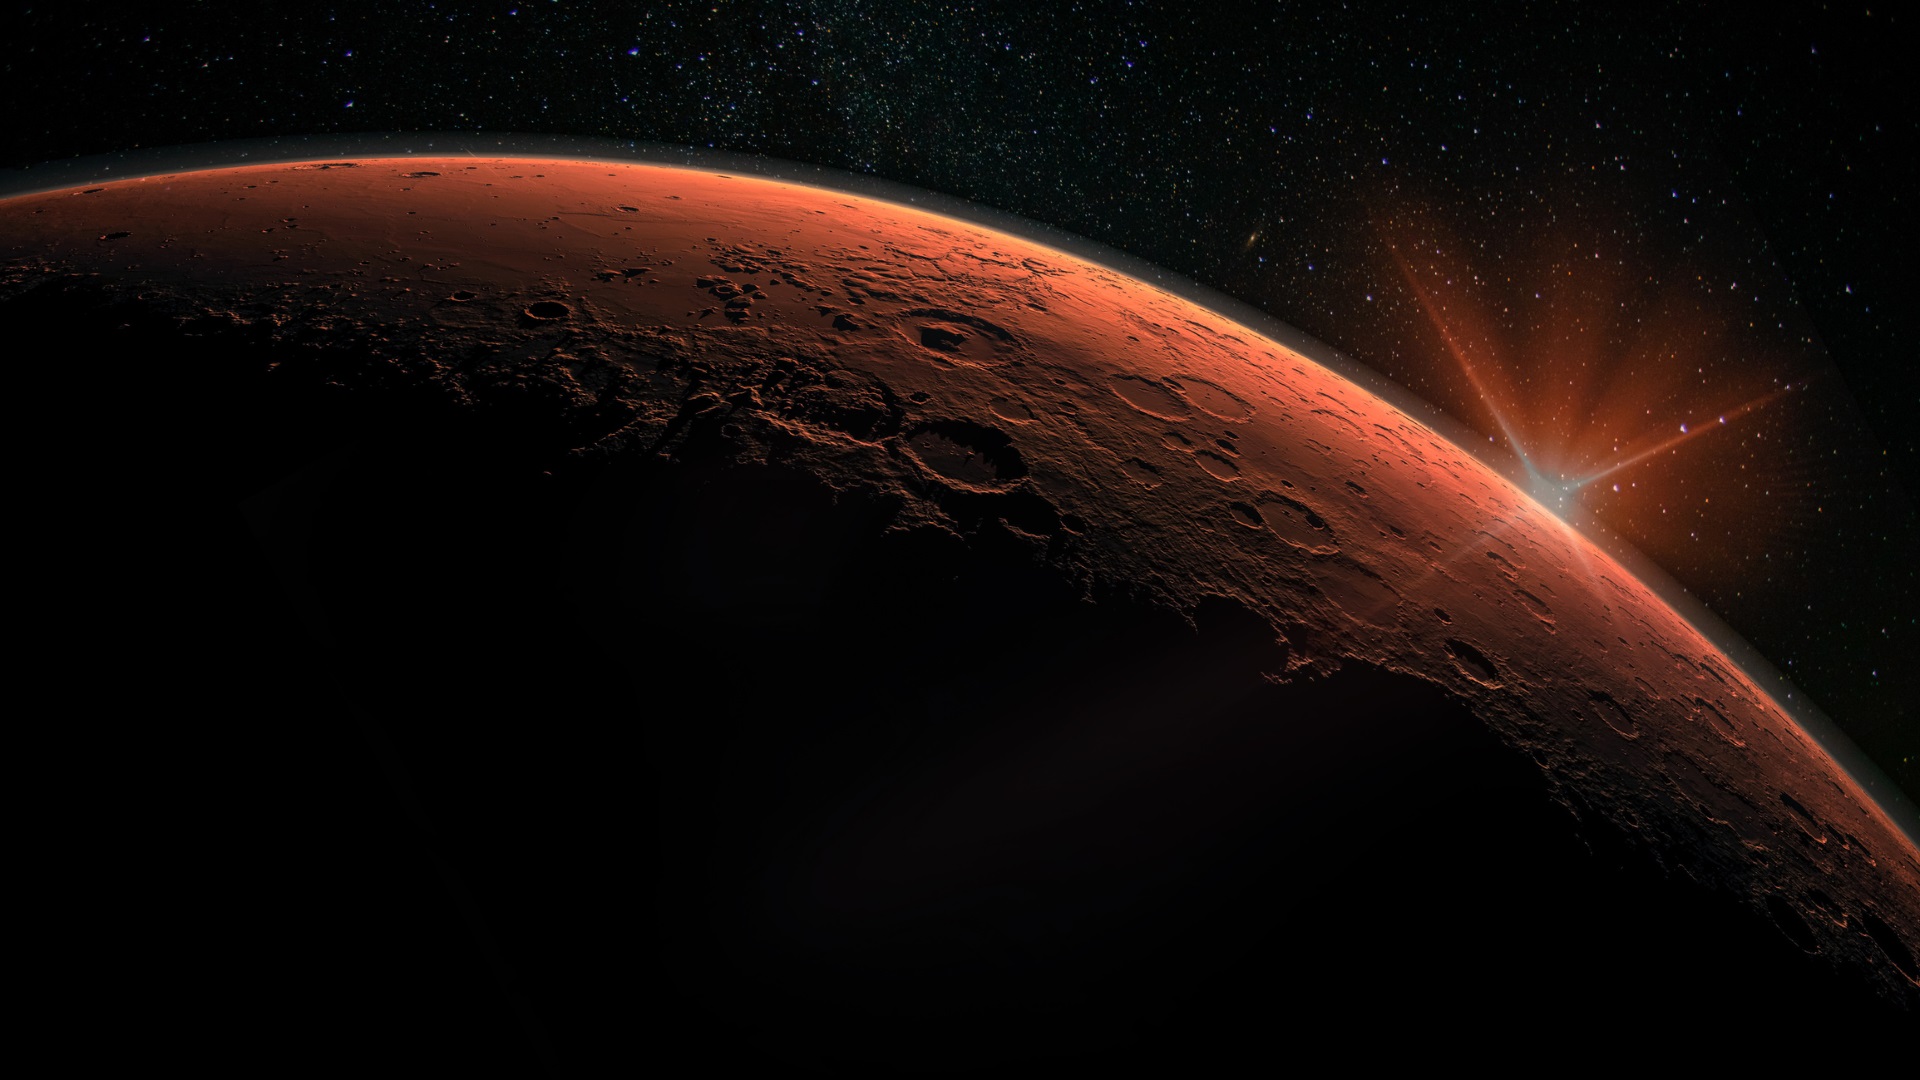 <p><strong>НАСА каца на Марс</strong></p>

<p>Марс ще получи нов малък обитател, когато роувърът на НАСА Perseverance стигне до Червената планета през февруари. Подобно на своите очарователни предшественици марсоходи в Програмата за изследване на Марс, Perseverance без съмнение ще събере ценна информаци, която да изпрати на Земята.</p>